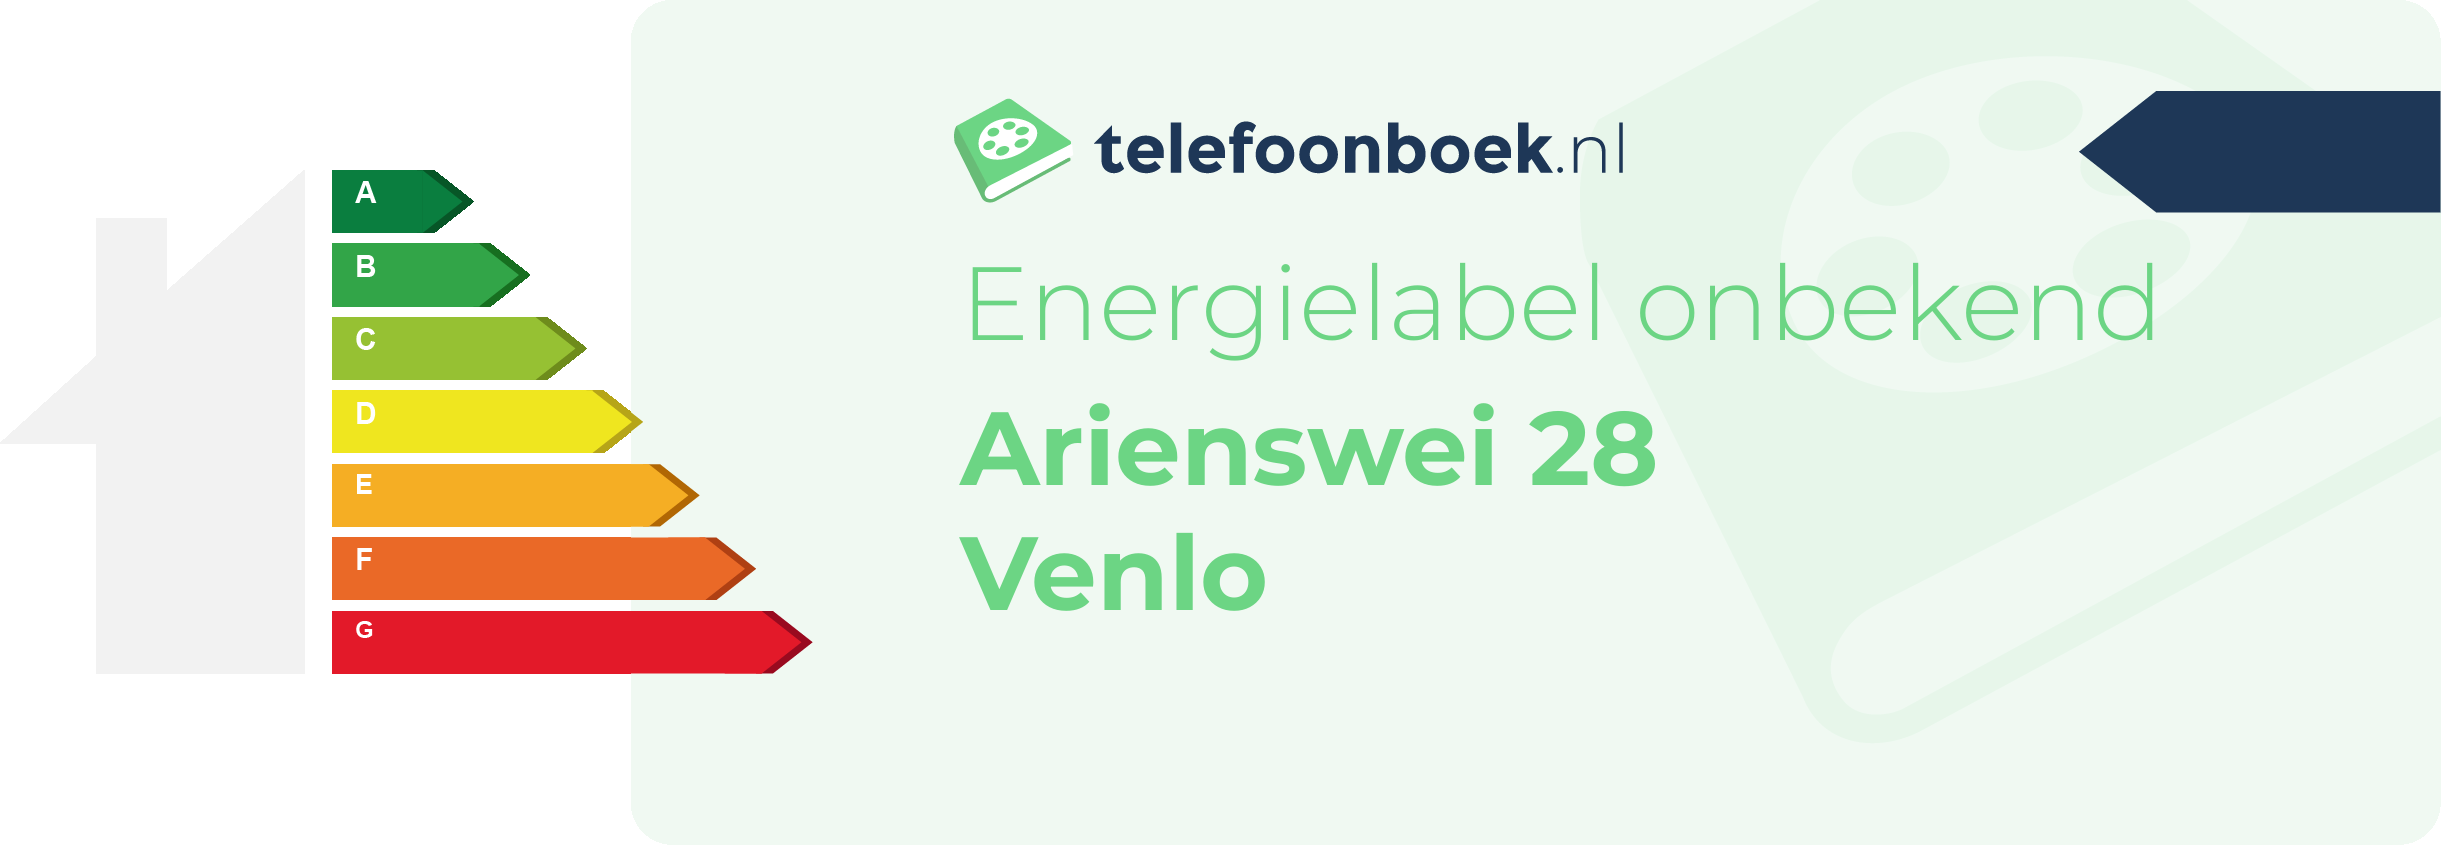 Energielabel Arienswei 28 Venlo